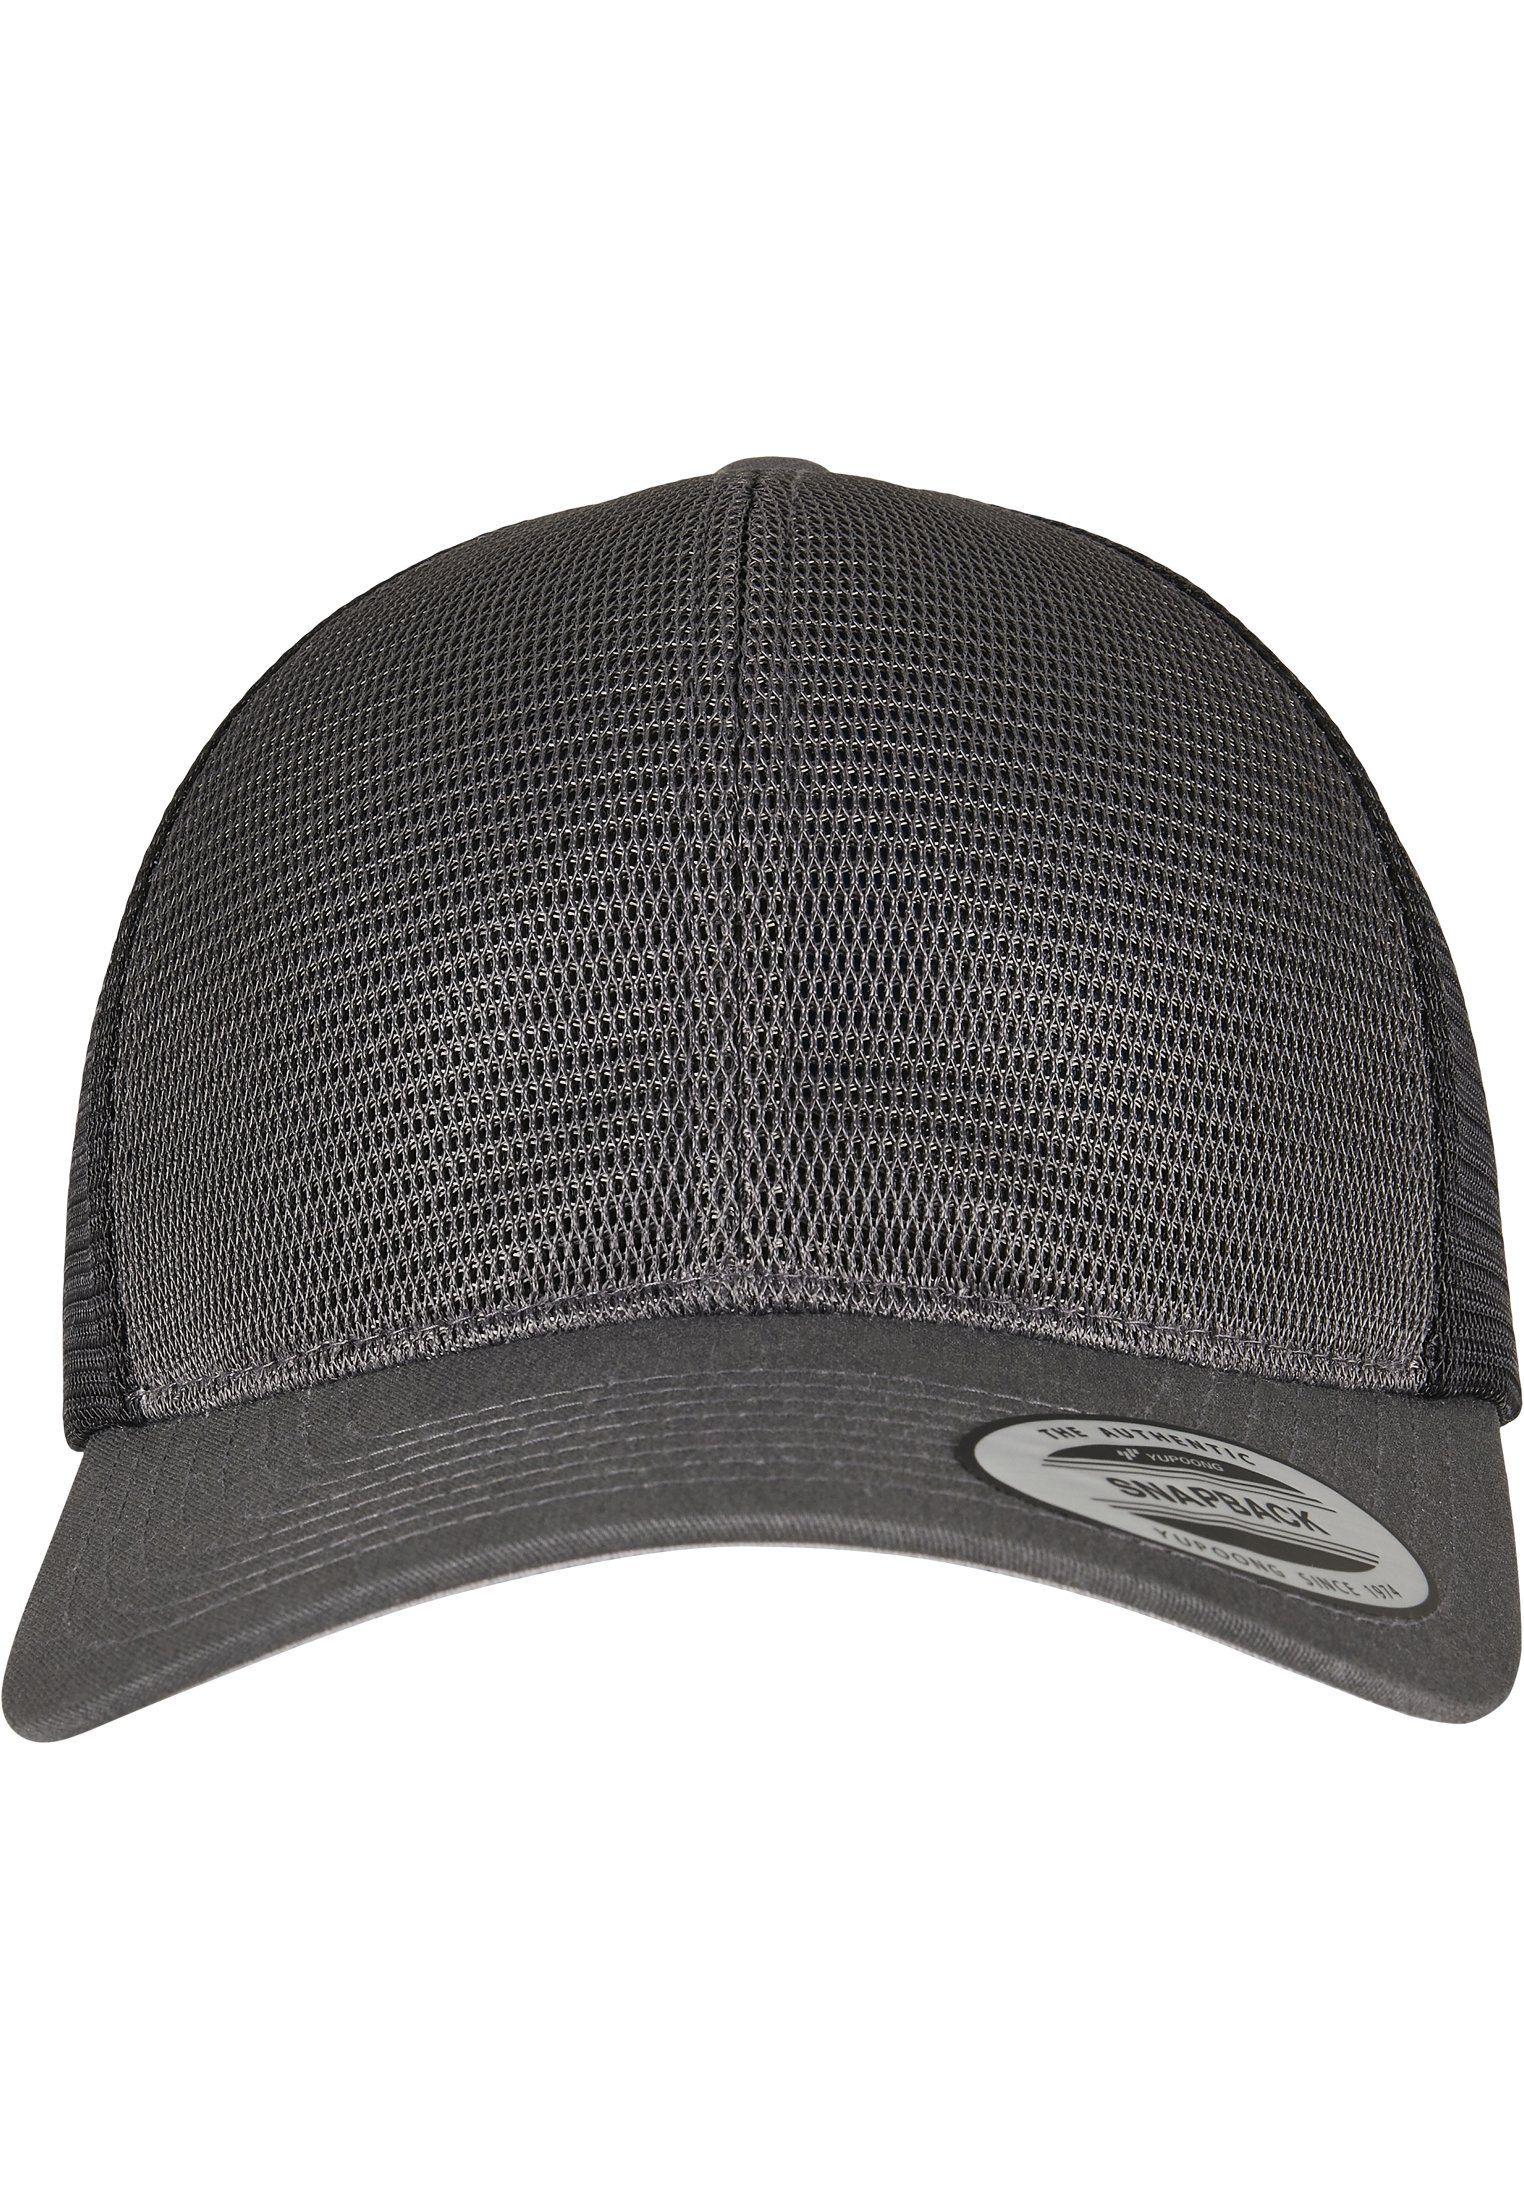 Flexfit Flex Cap Accessoires 360° Omnimesh charcoal/black 2-Tone Cap